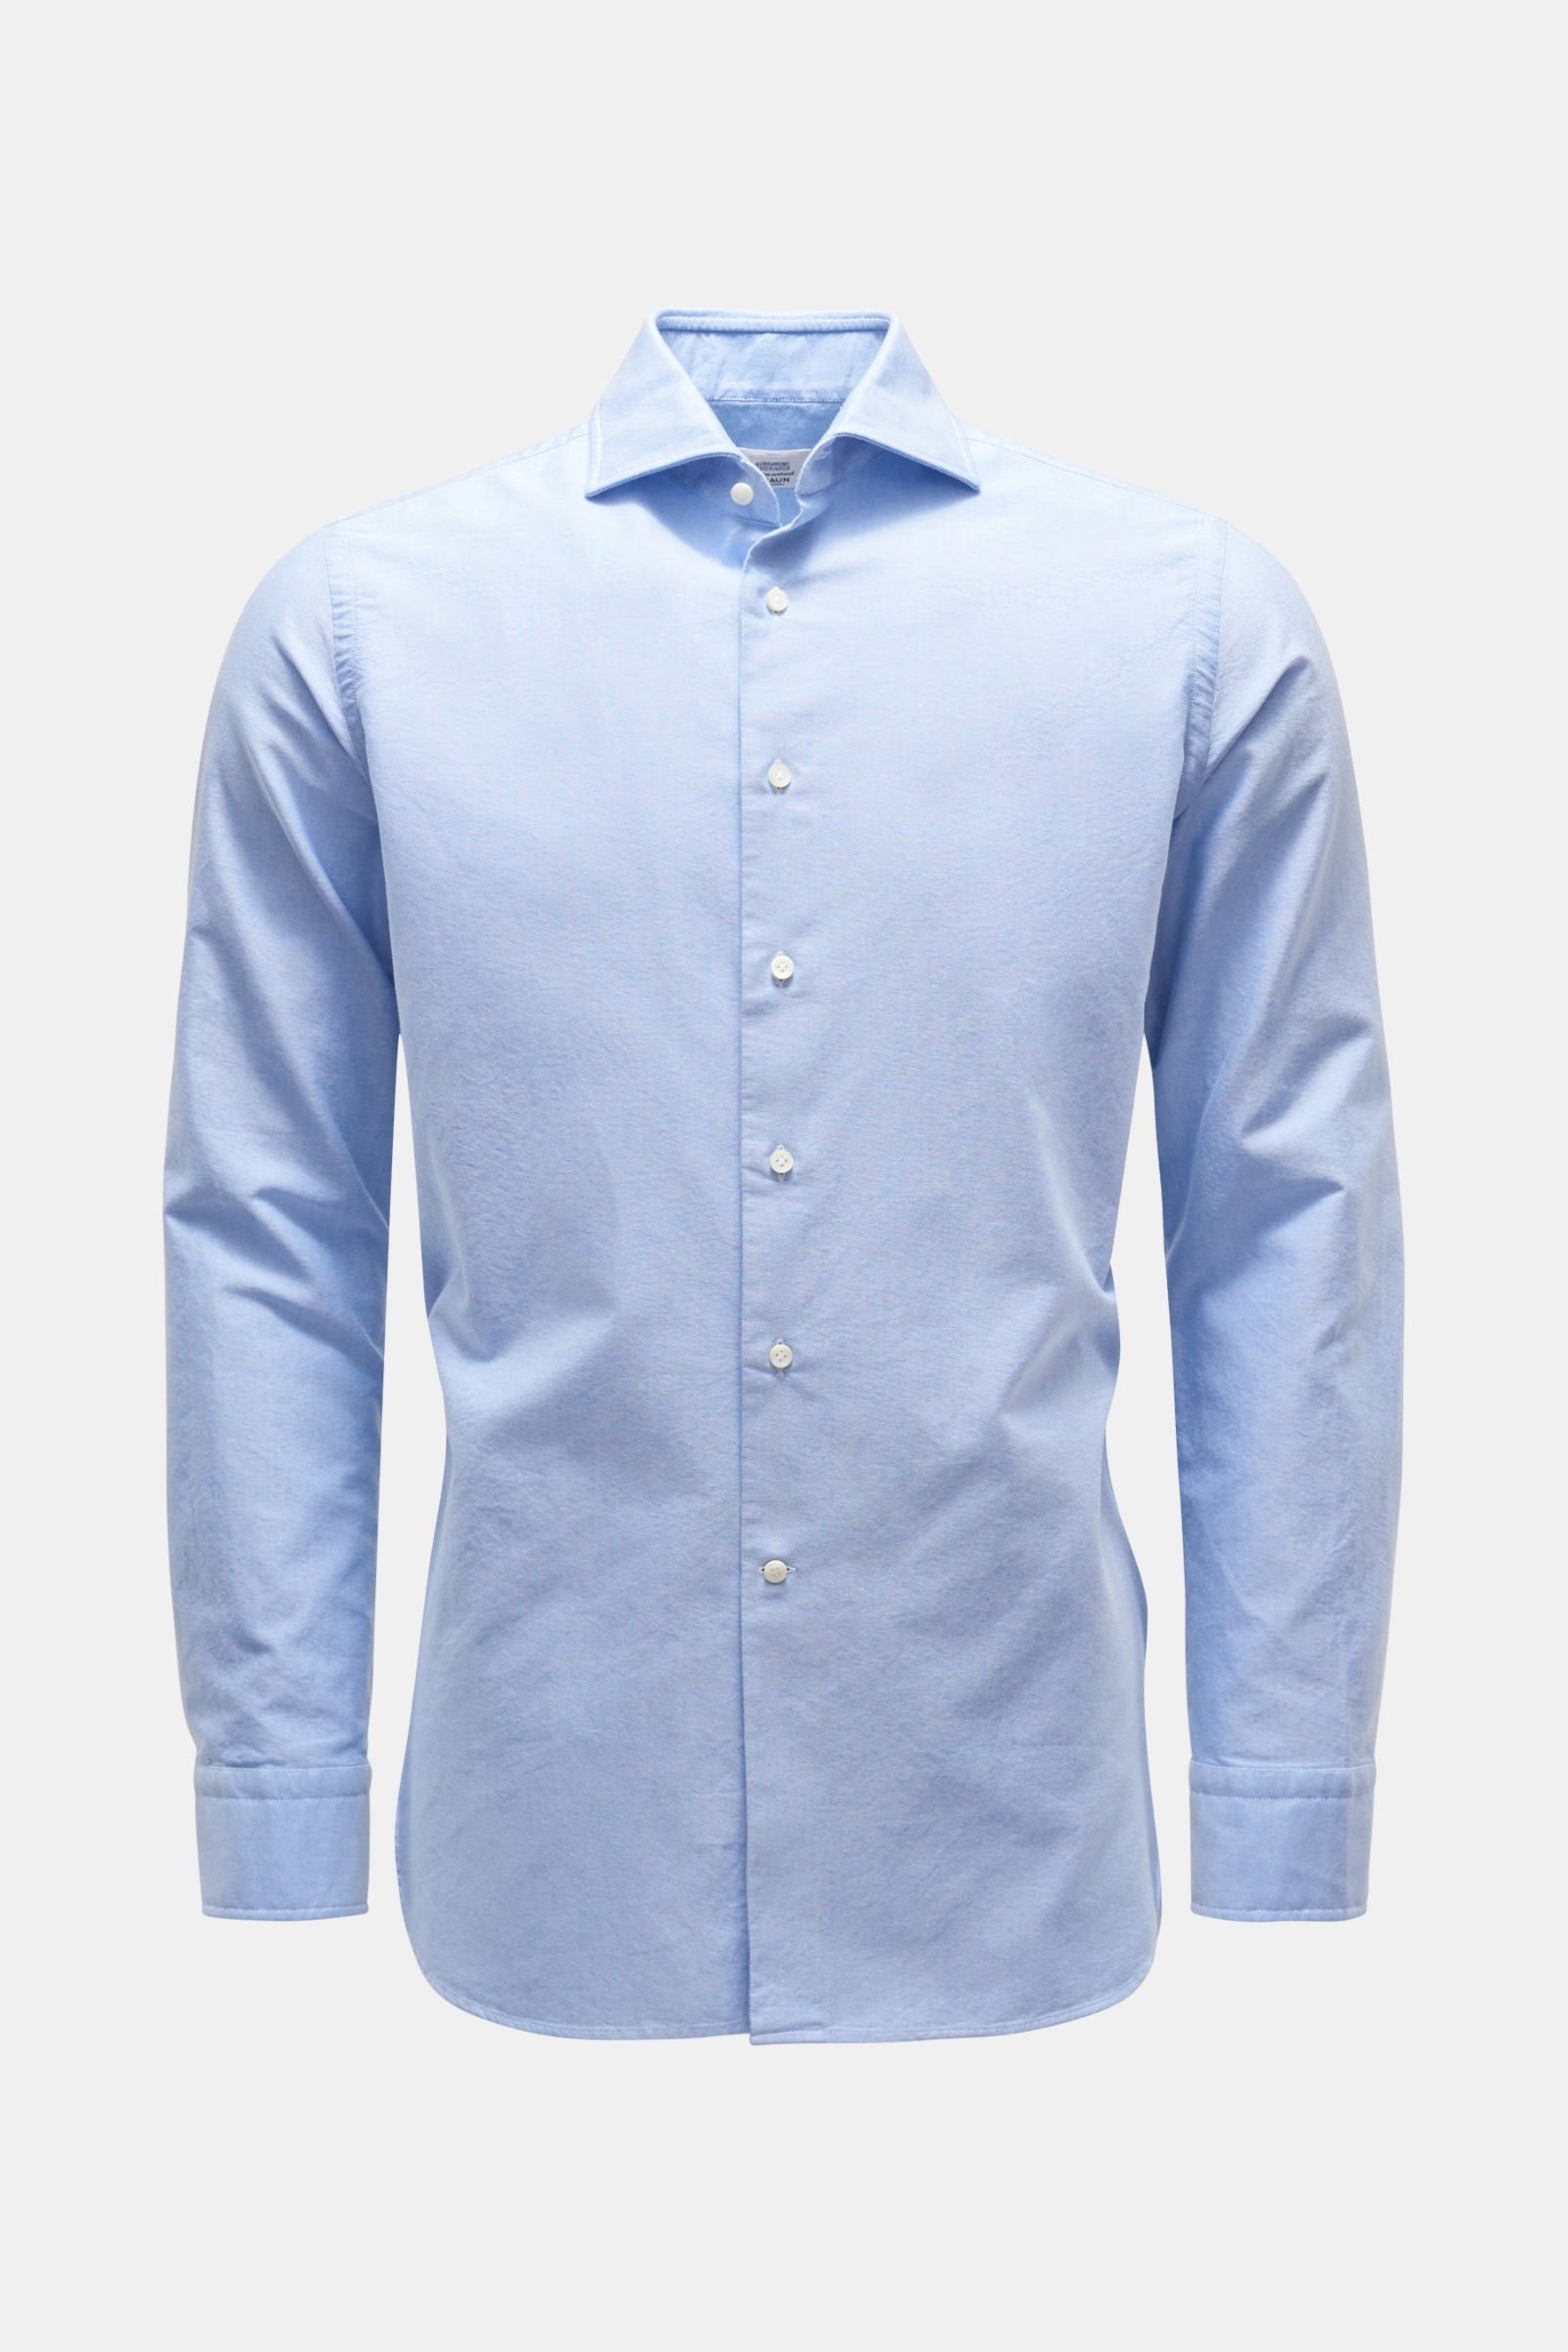 Oxford shirt shark collar grey-blue